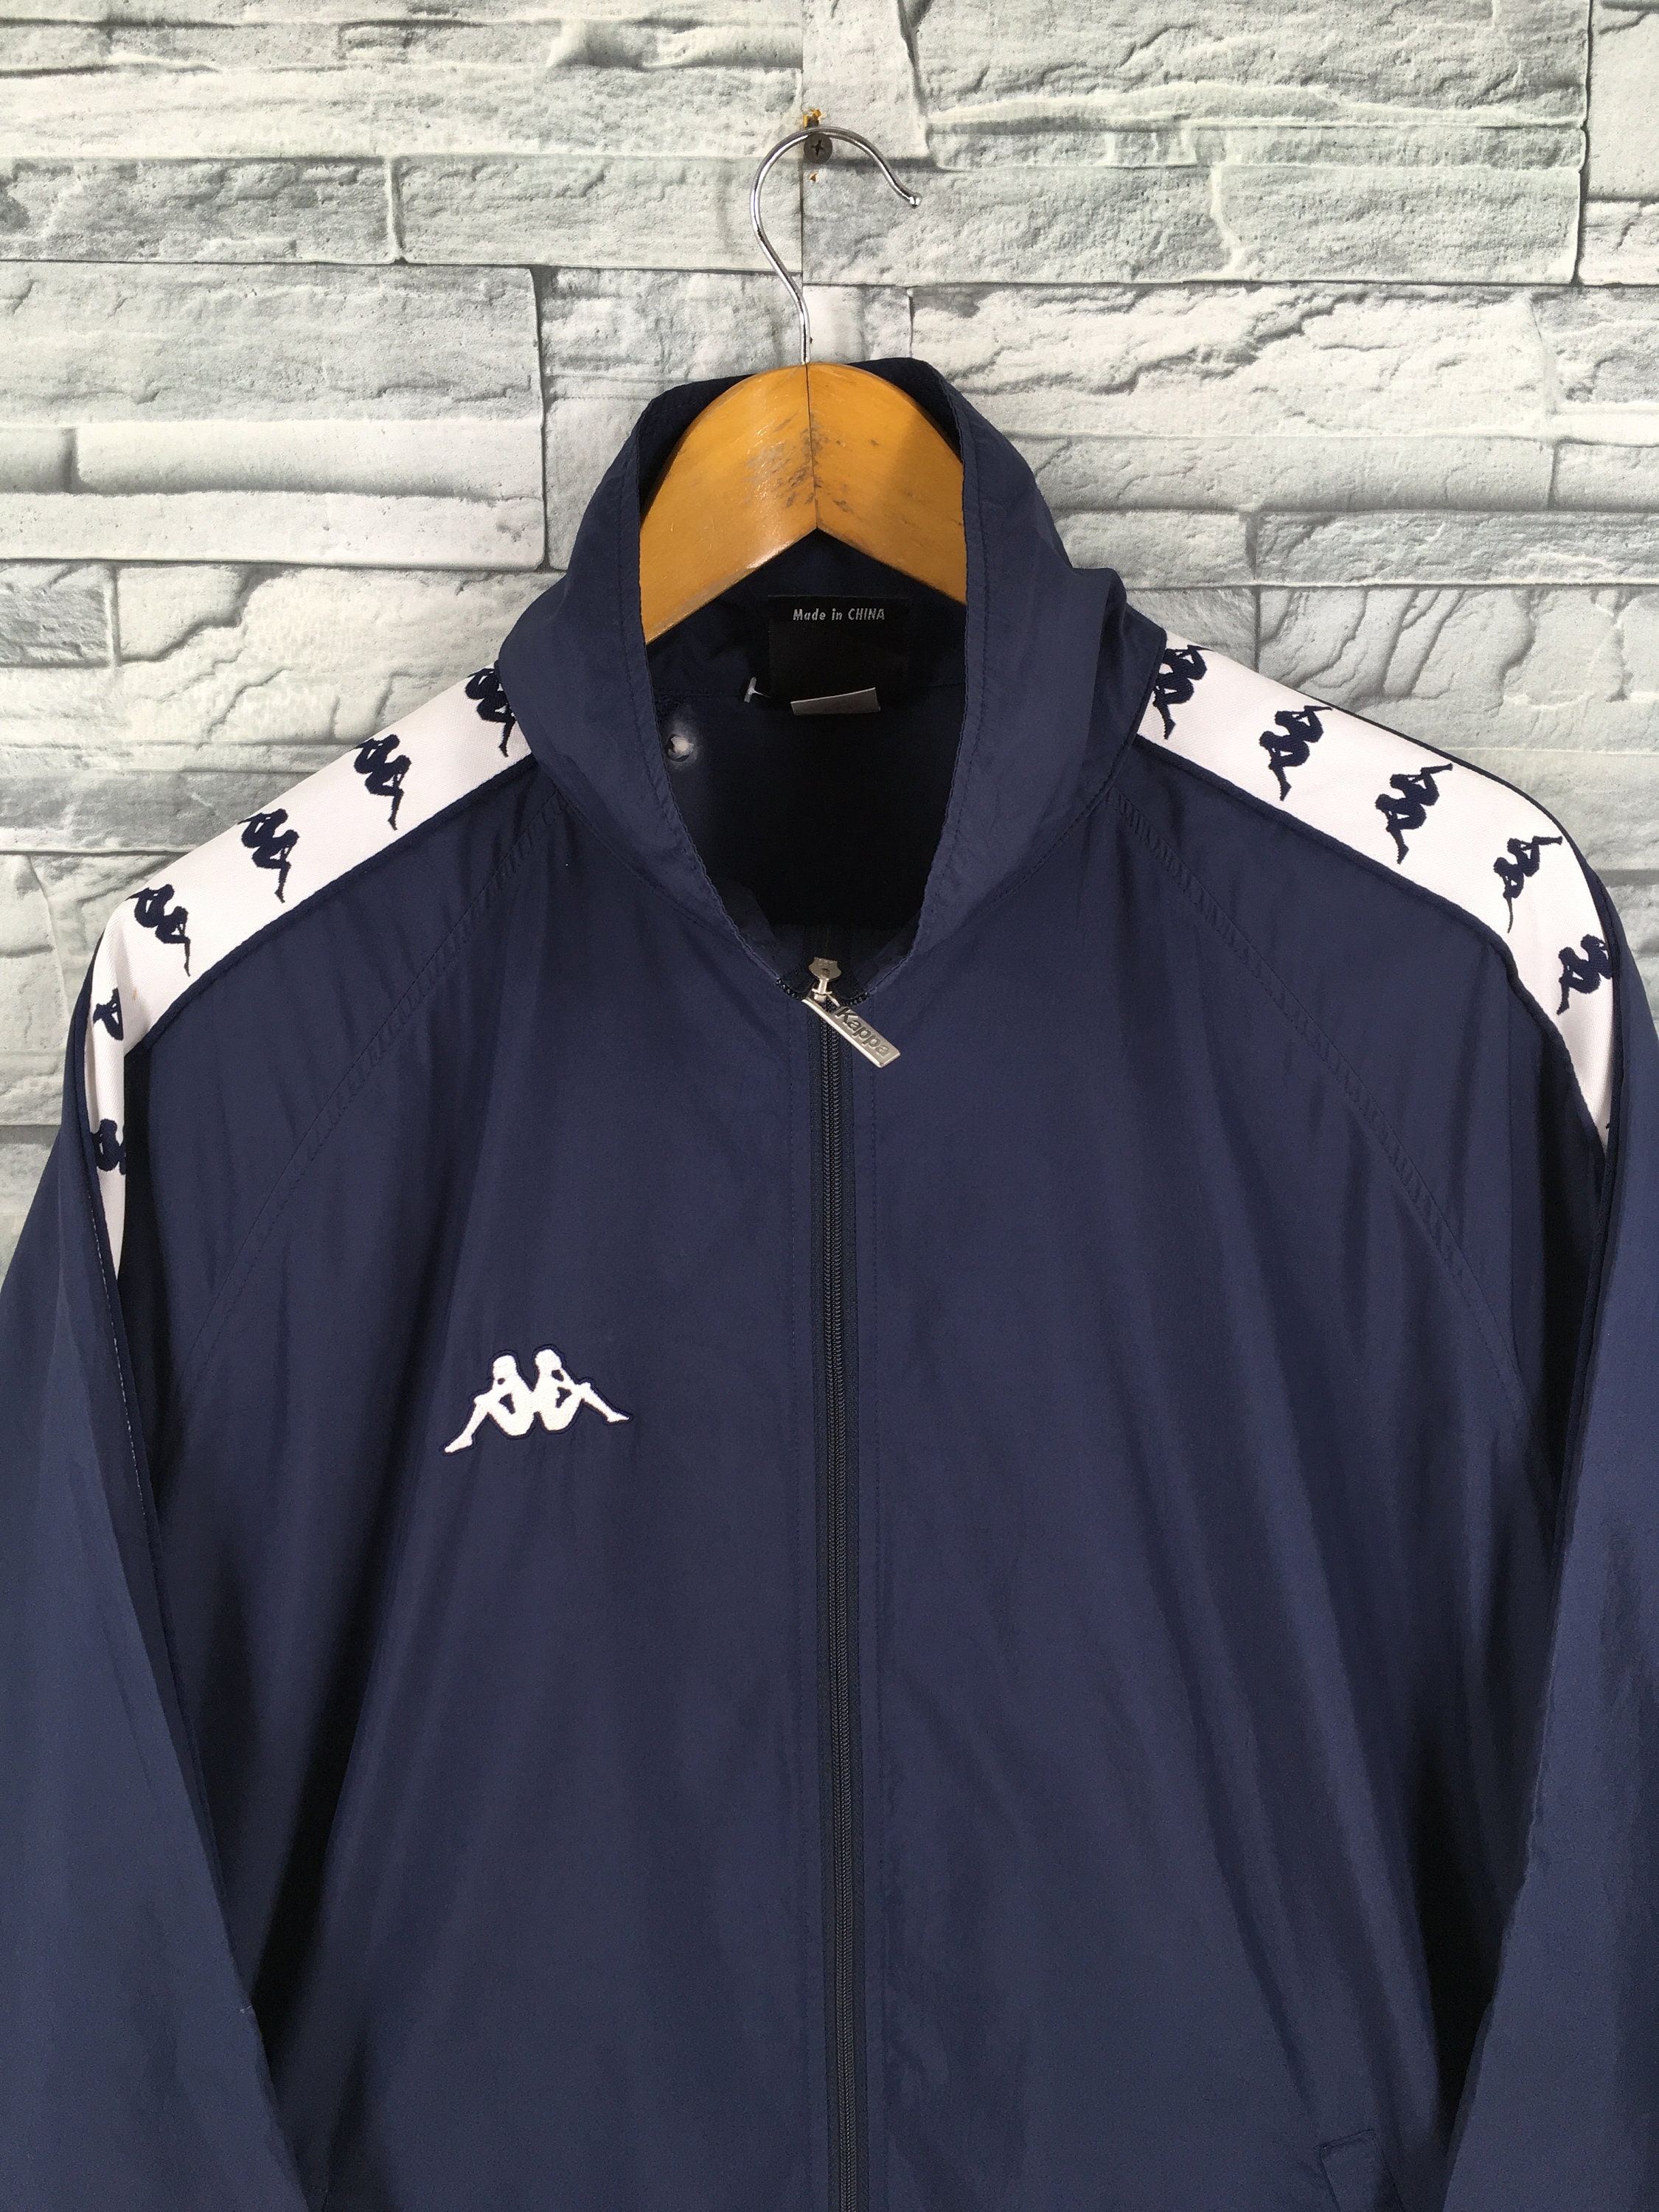 Kappa Sport Italia Tracksuit Jacket Xlarge Vintage 90s Kappa | Etsy